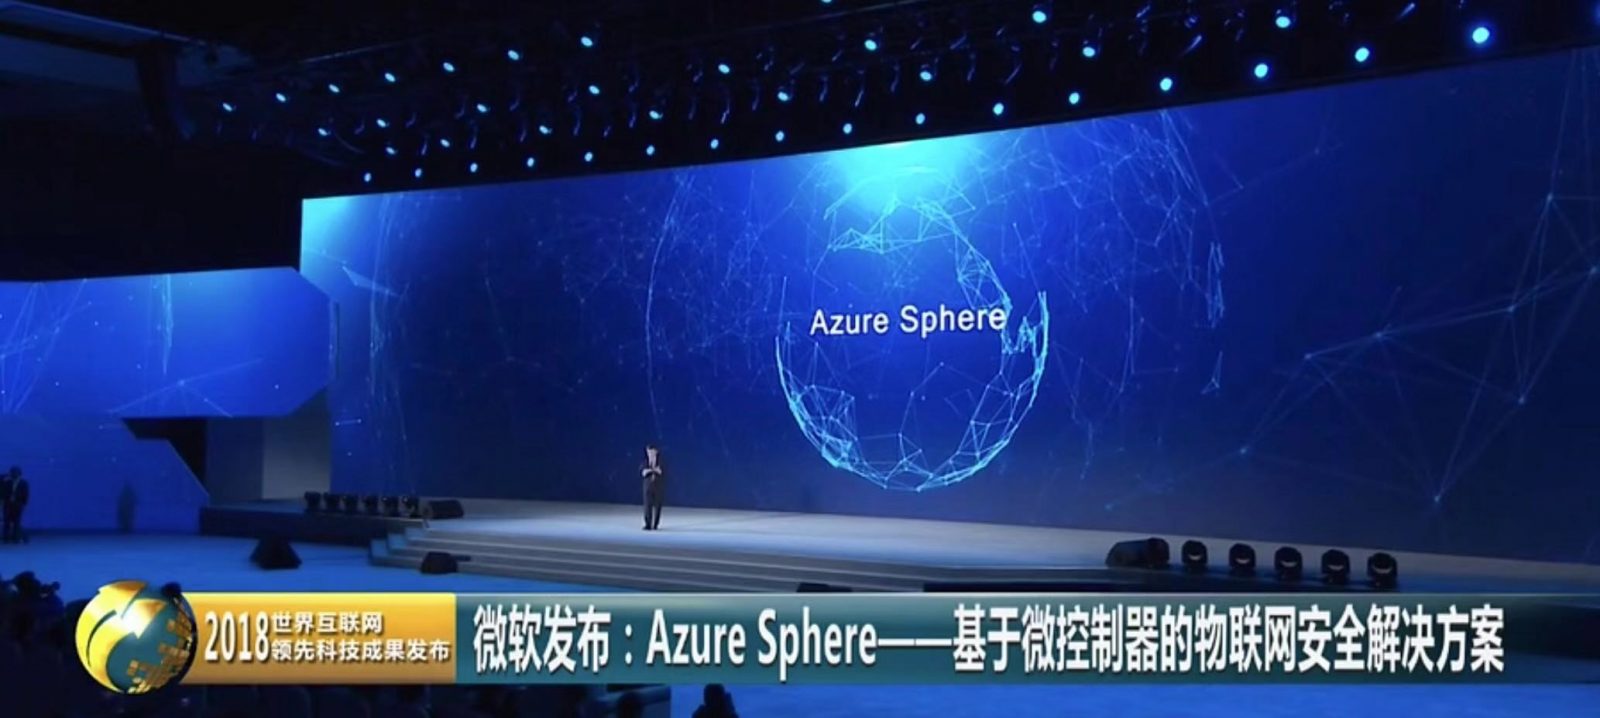 微软Azure Sphere被评为“本年度顶尖且代表互联网发展前沿的领先科技成果”